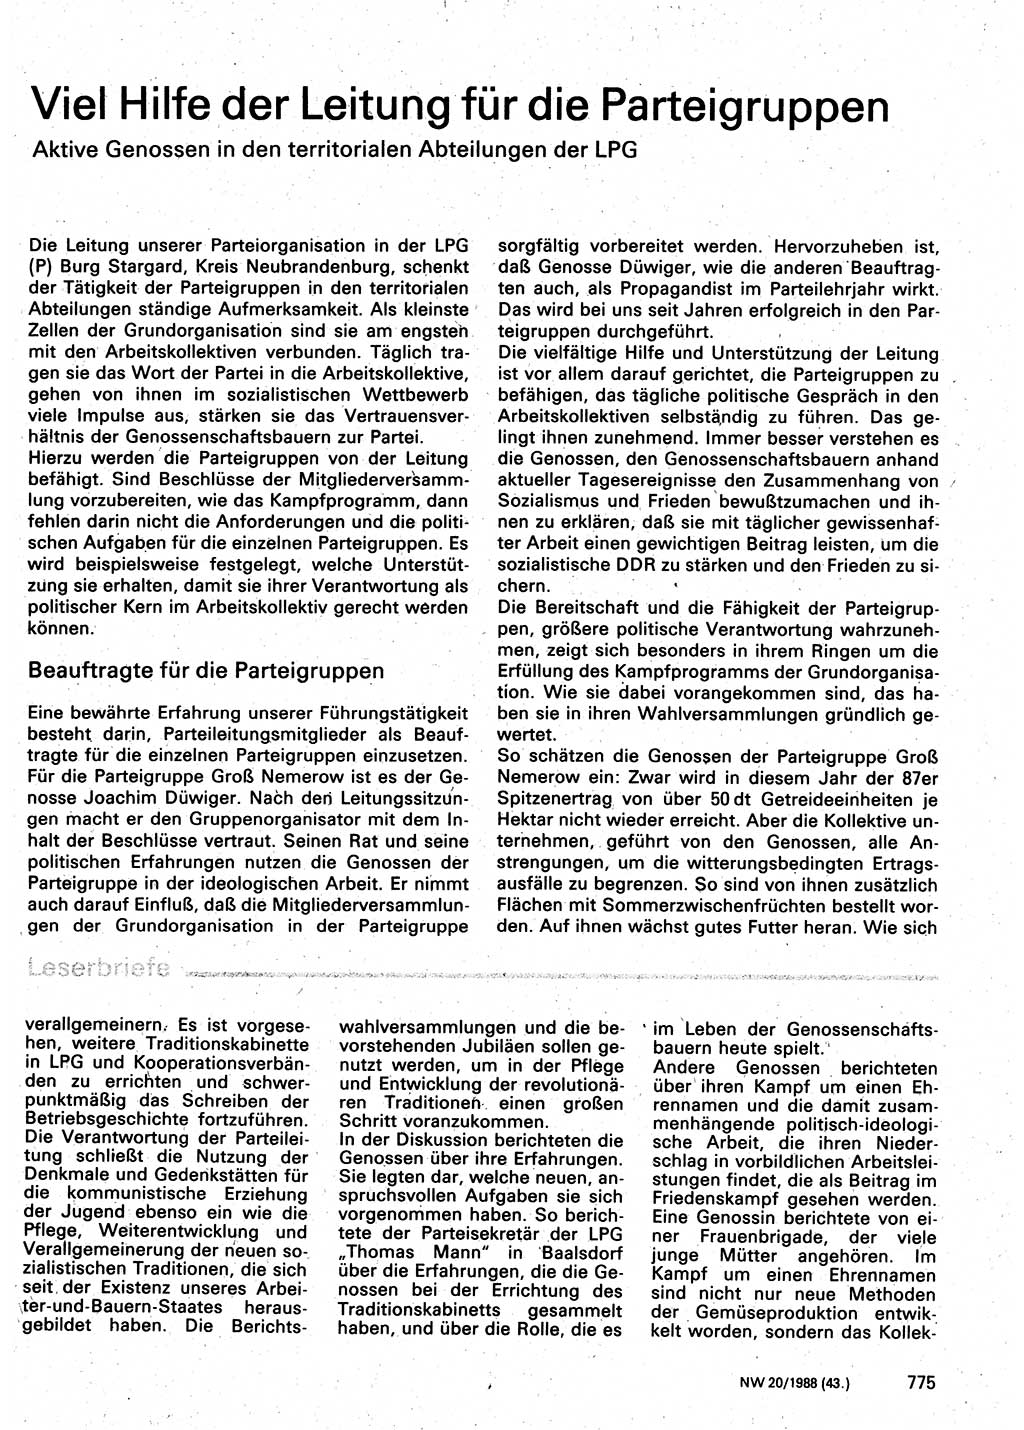 Neuer Weg (NW), Organ des Zentralkomitees (ZK) der SED (Sozialistische Einheitspartei Deutschlands) für Fragen des Parteilebens, 43. Jahrgang [Deutsche Demokratische Republik (DDR)] 1988, Seite 775 (NW ZK SED DDR 1988, S. 775)